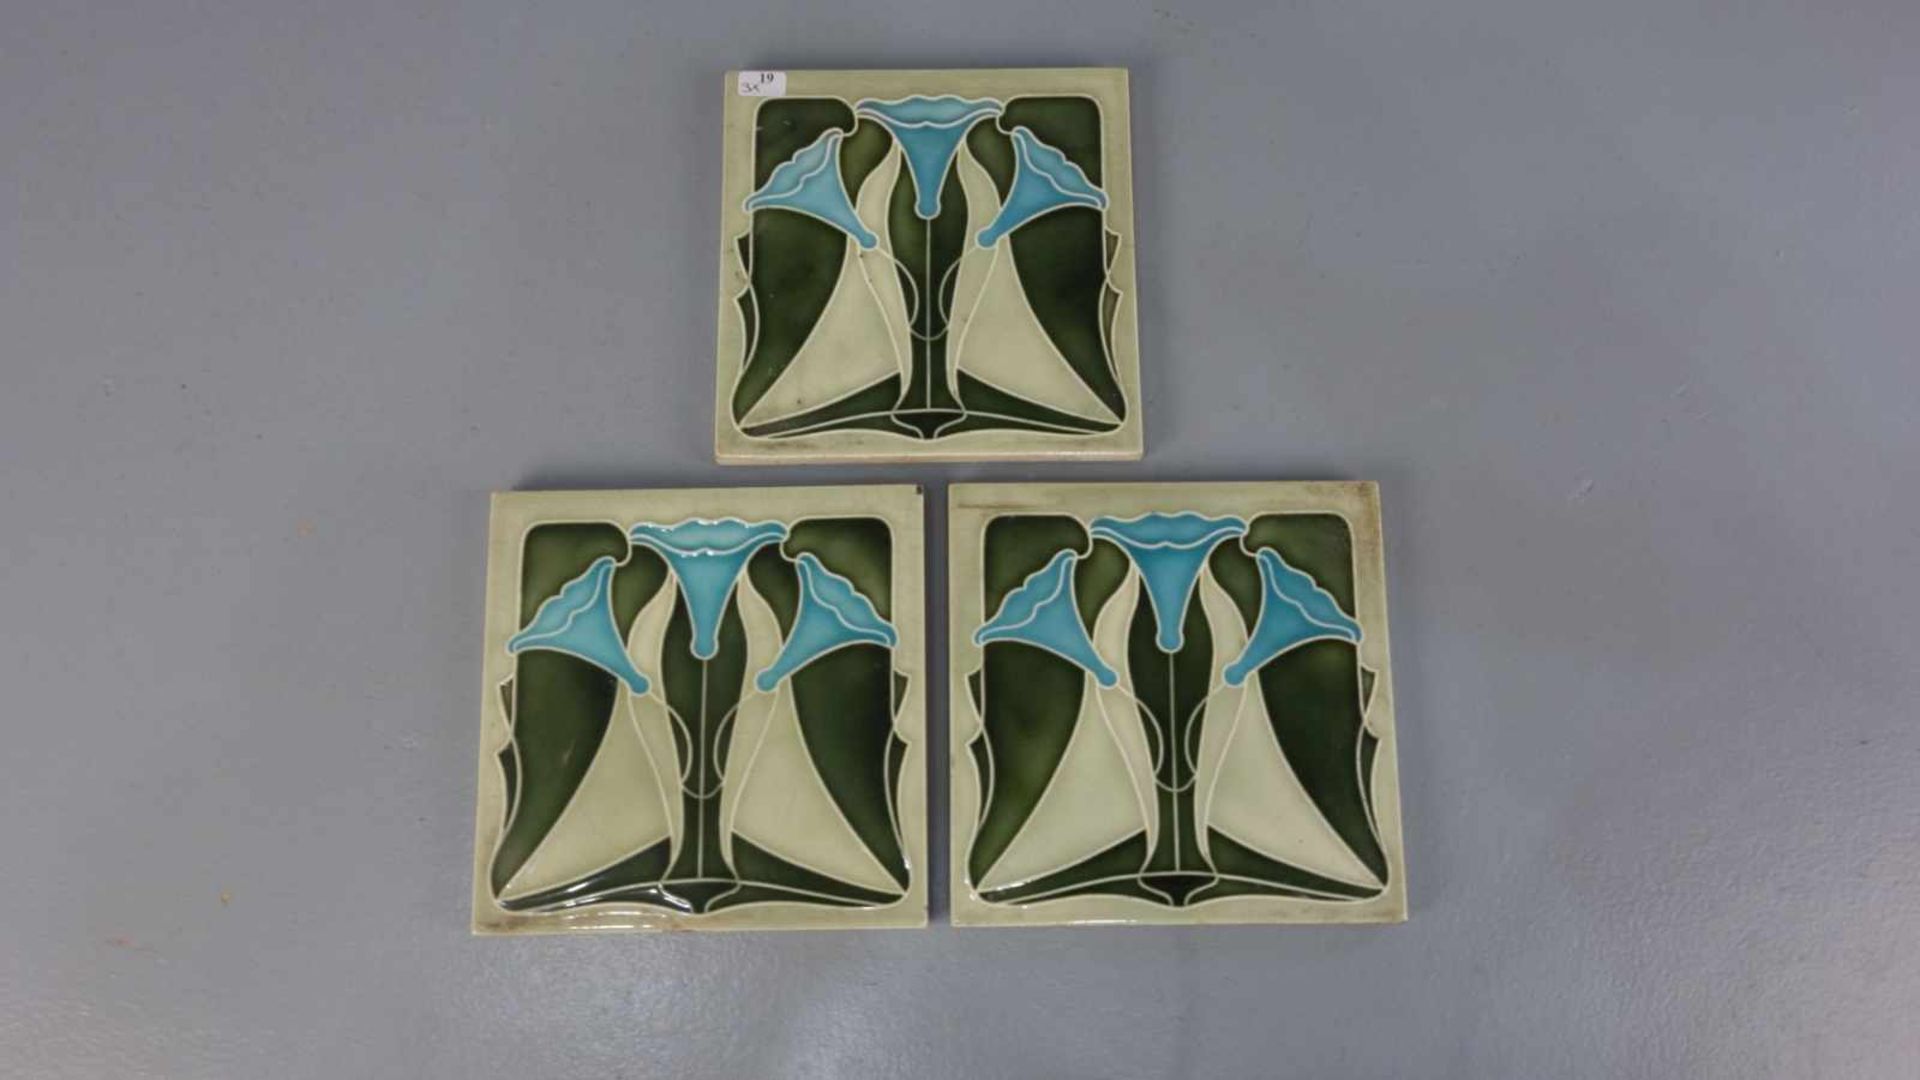 3 JUGENDSTILFLIESEN / art nouveau tiles, heller Scherben, um 1900, dreifarbig glasiert mit